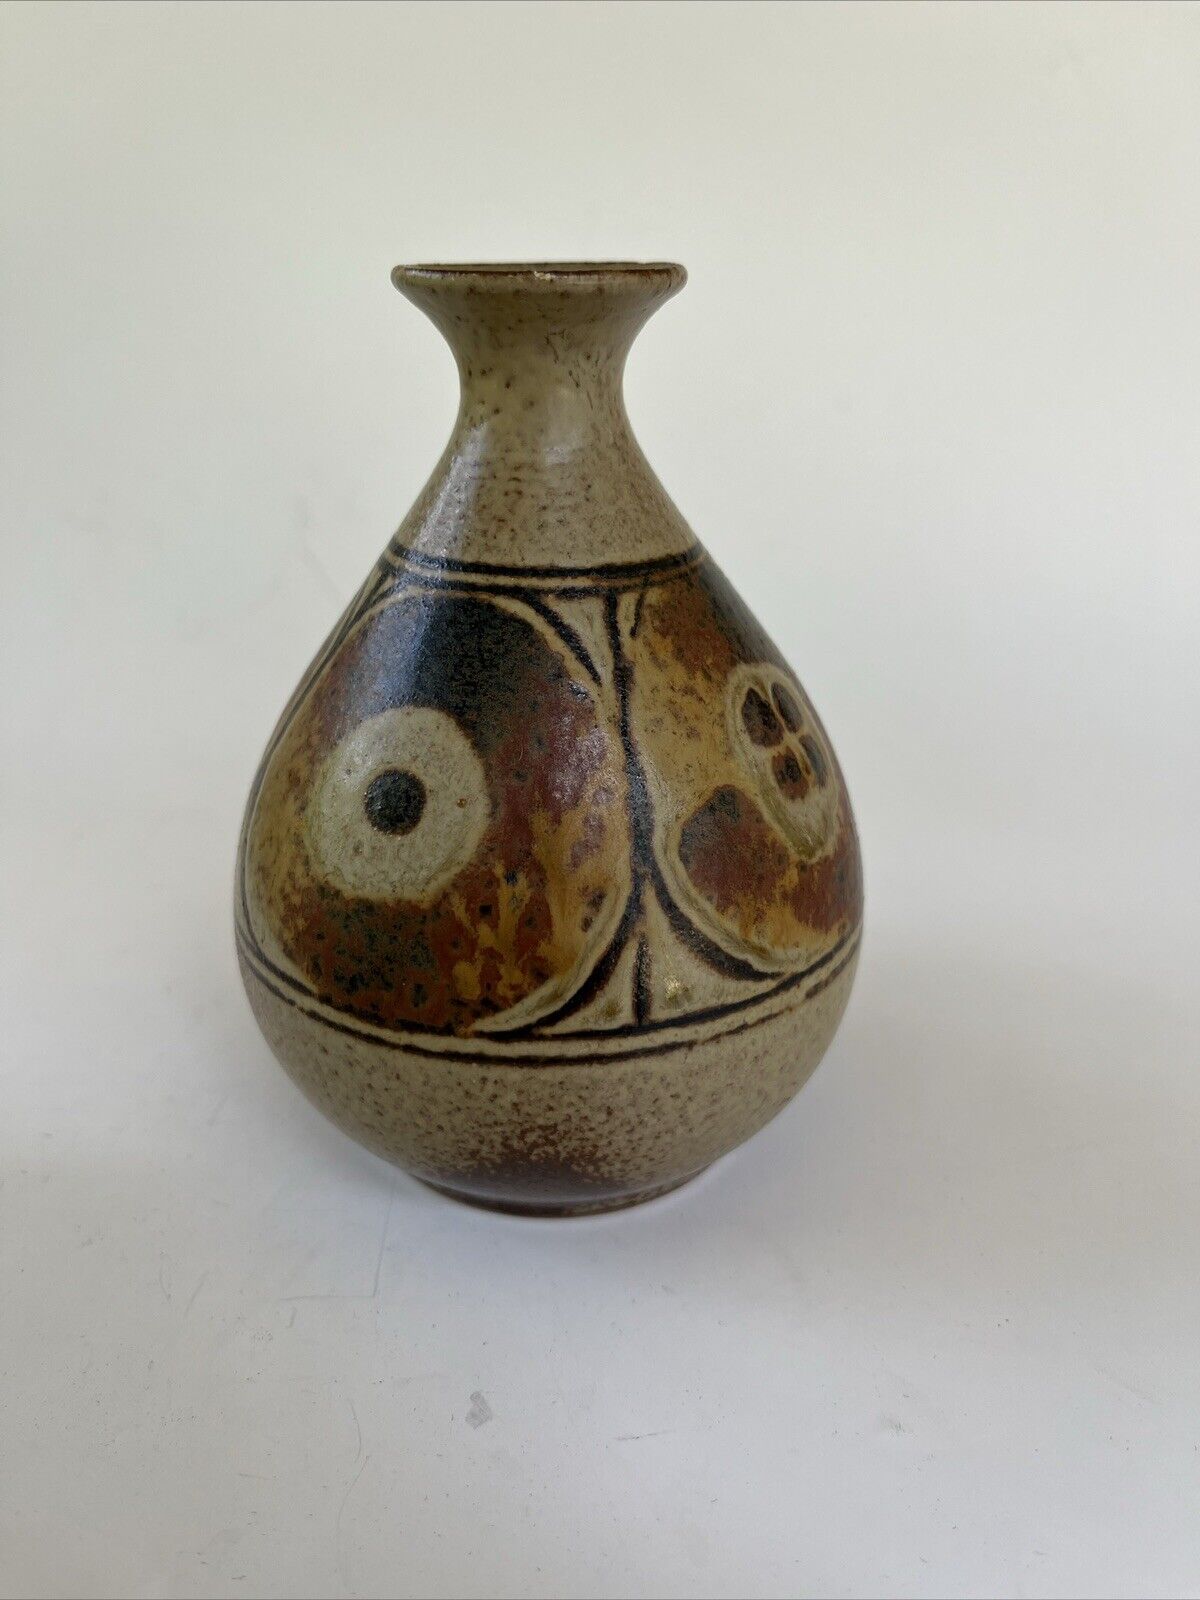 Vintage Japanese Geometric Weedpot Bud Vase  4.5 Inch